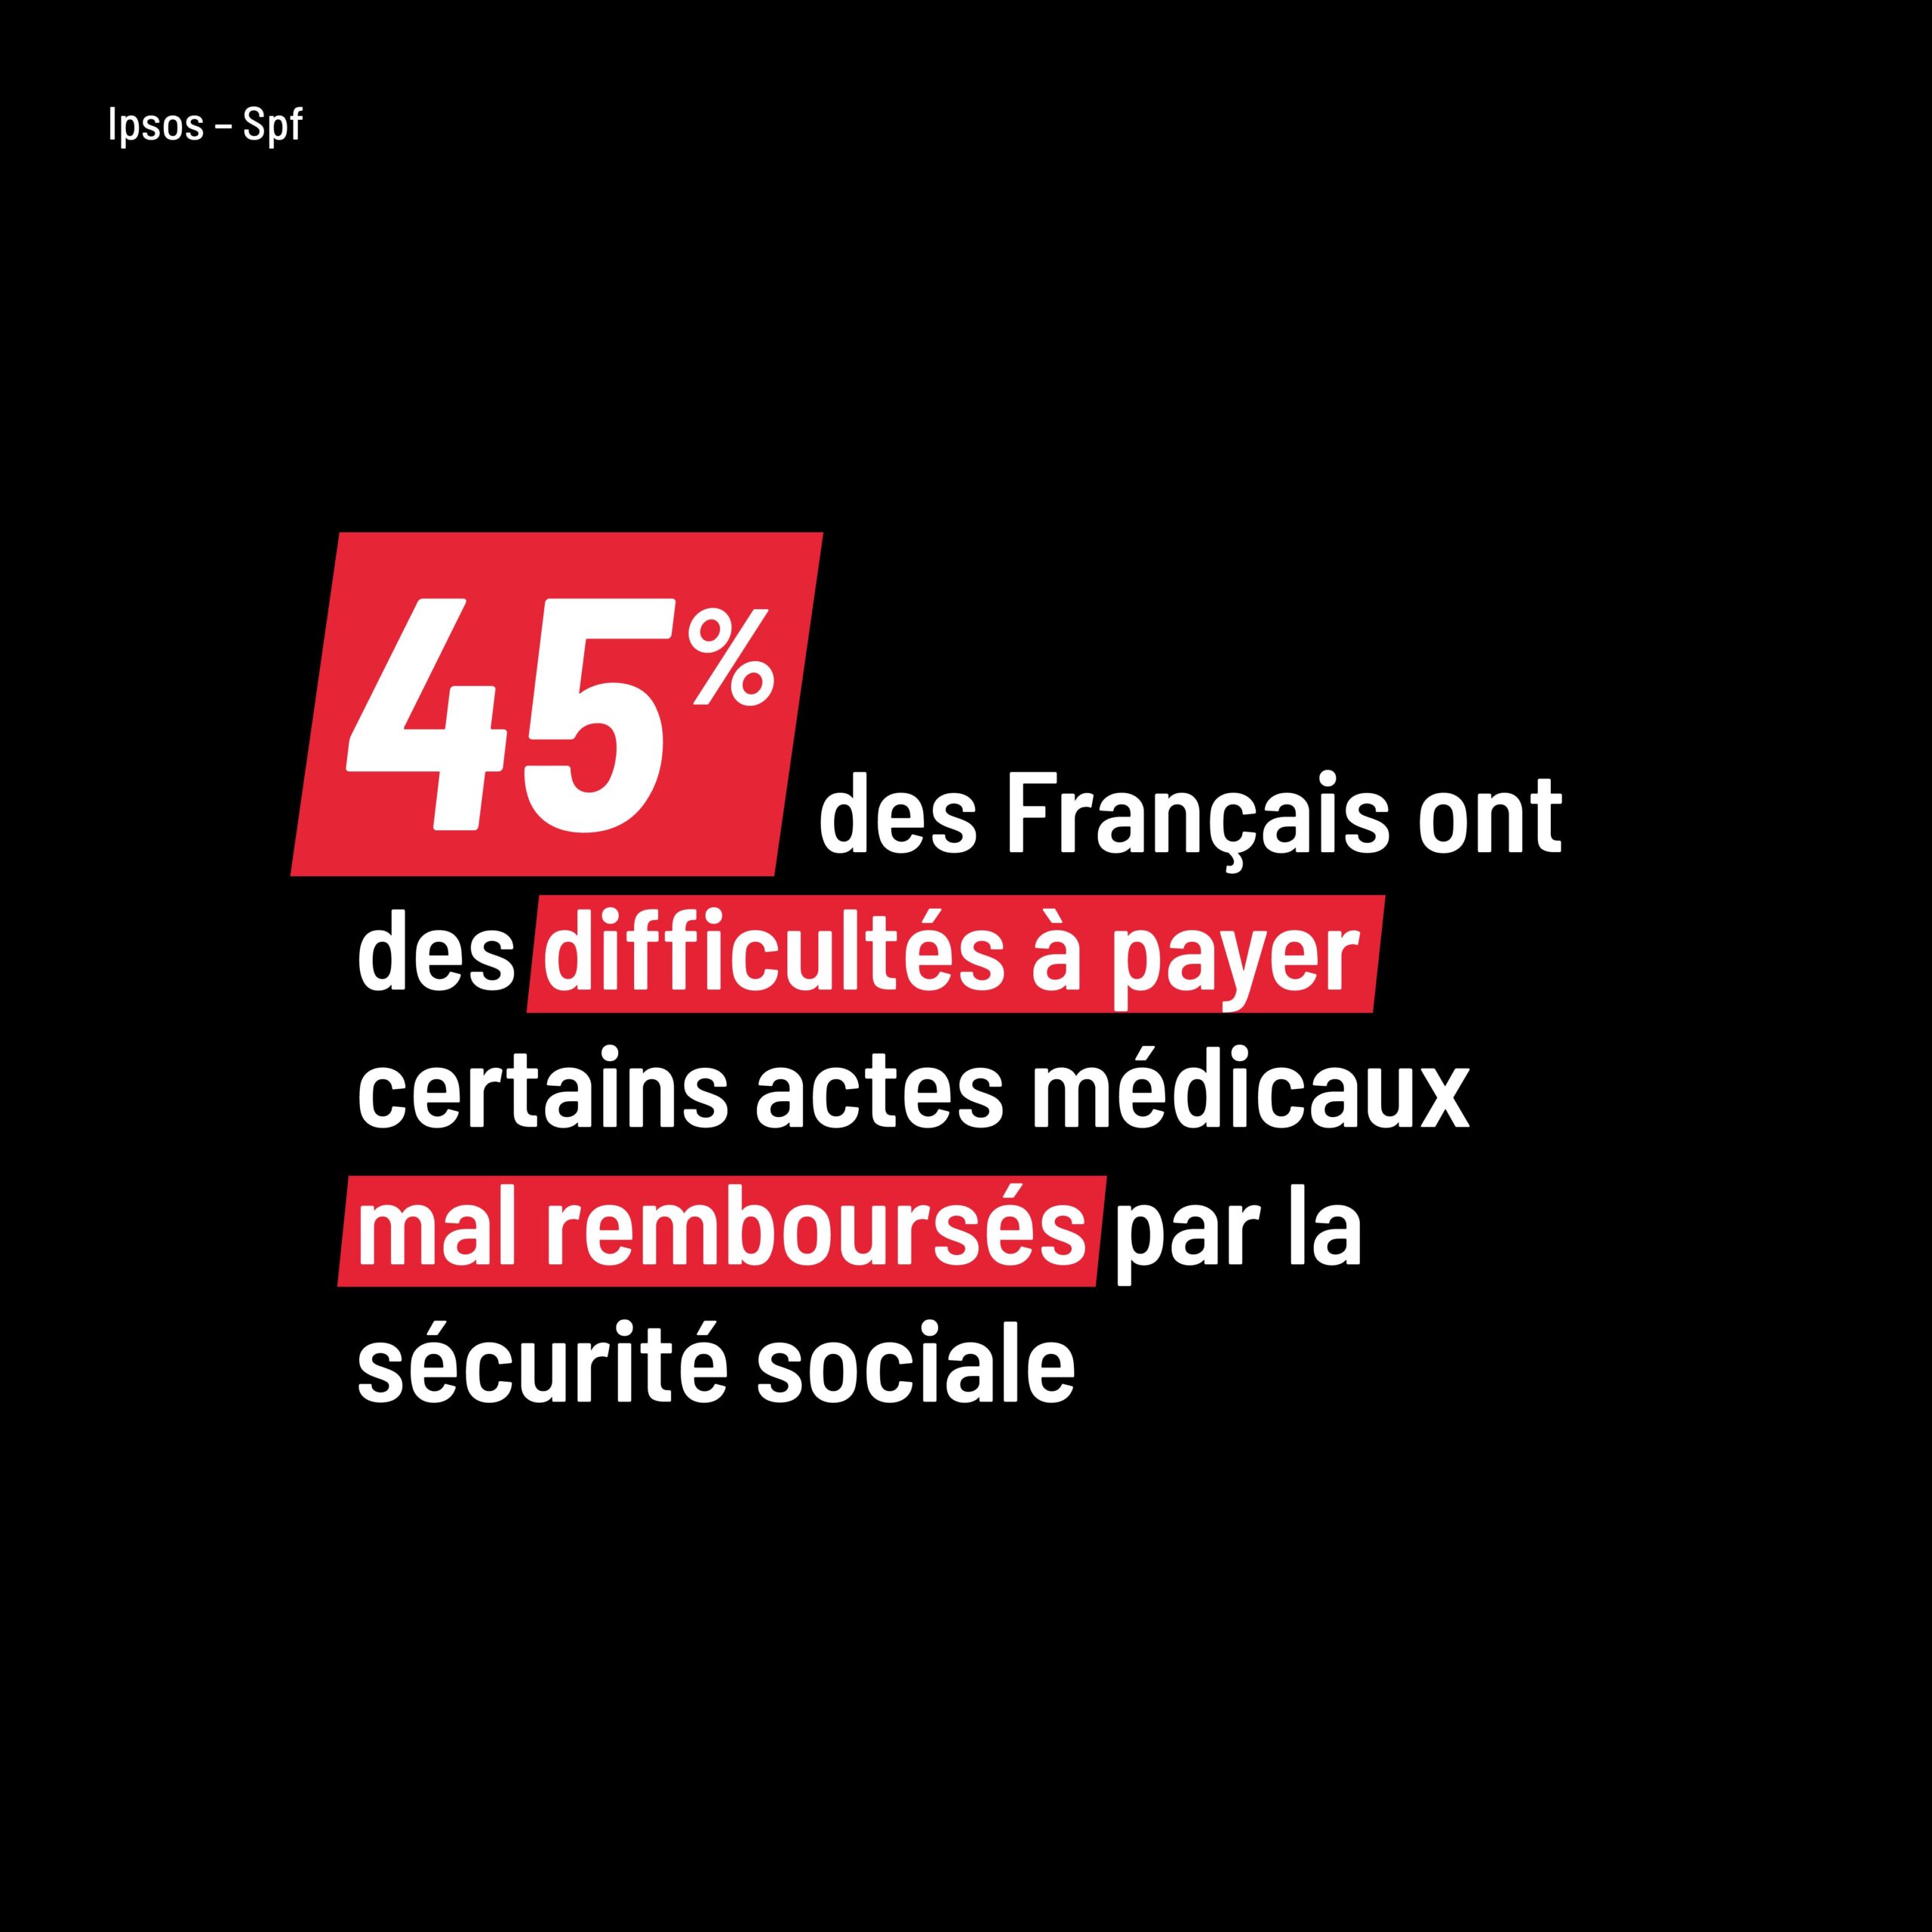 45% des Français ont des difficultés à payer certaines actes médicaux mal remboursés par la Sécurité sociale